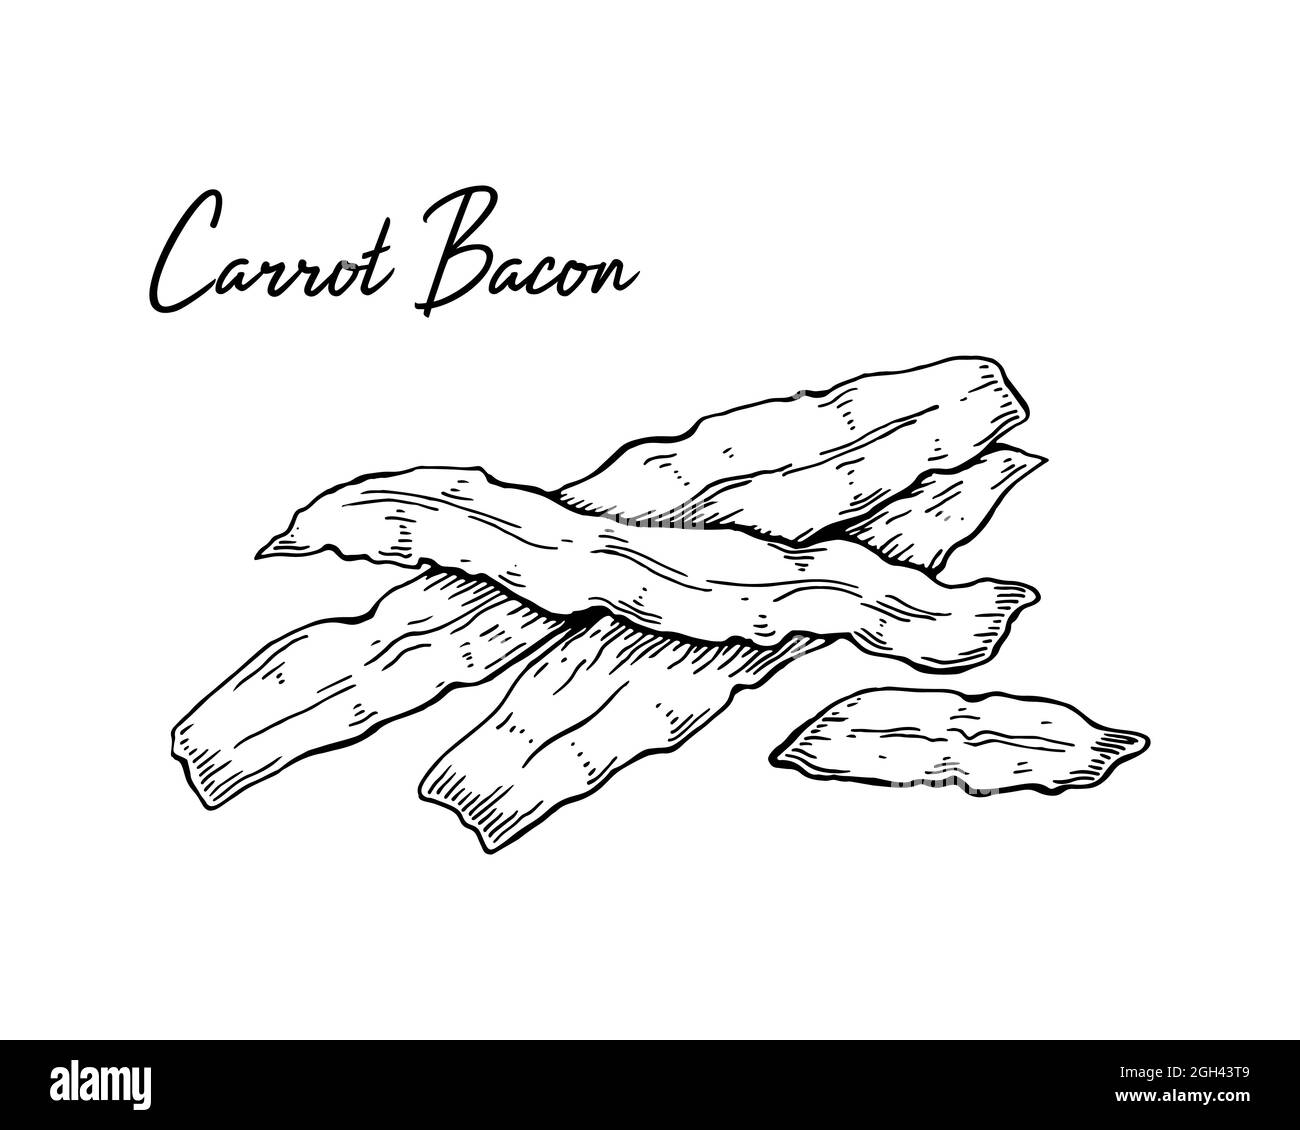 Bacon de carotte tiré à la main. Illustration vectorielle dans le style d'esquisse Illustration de Vecteur